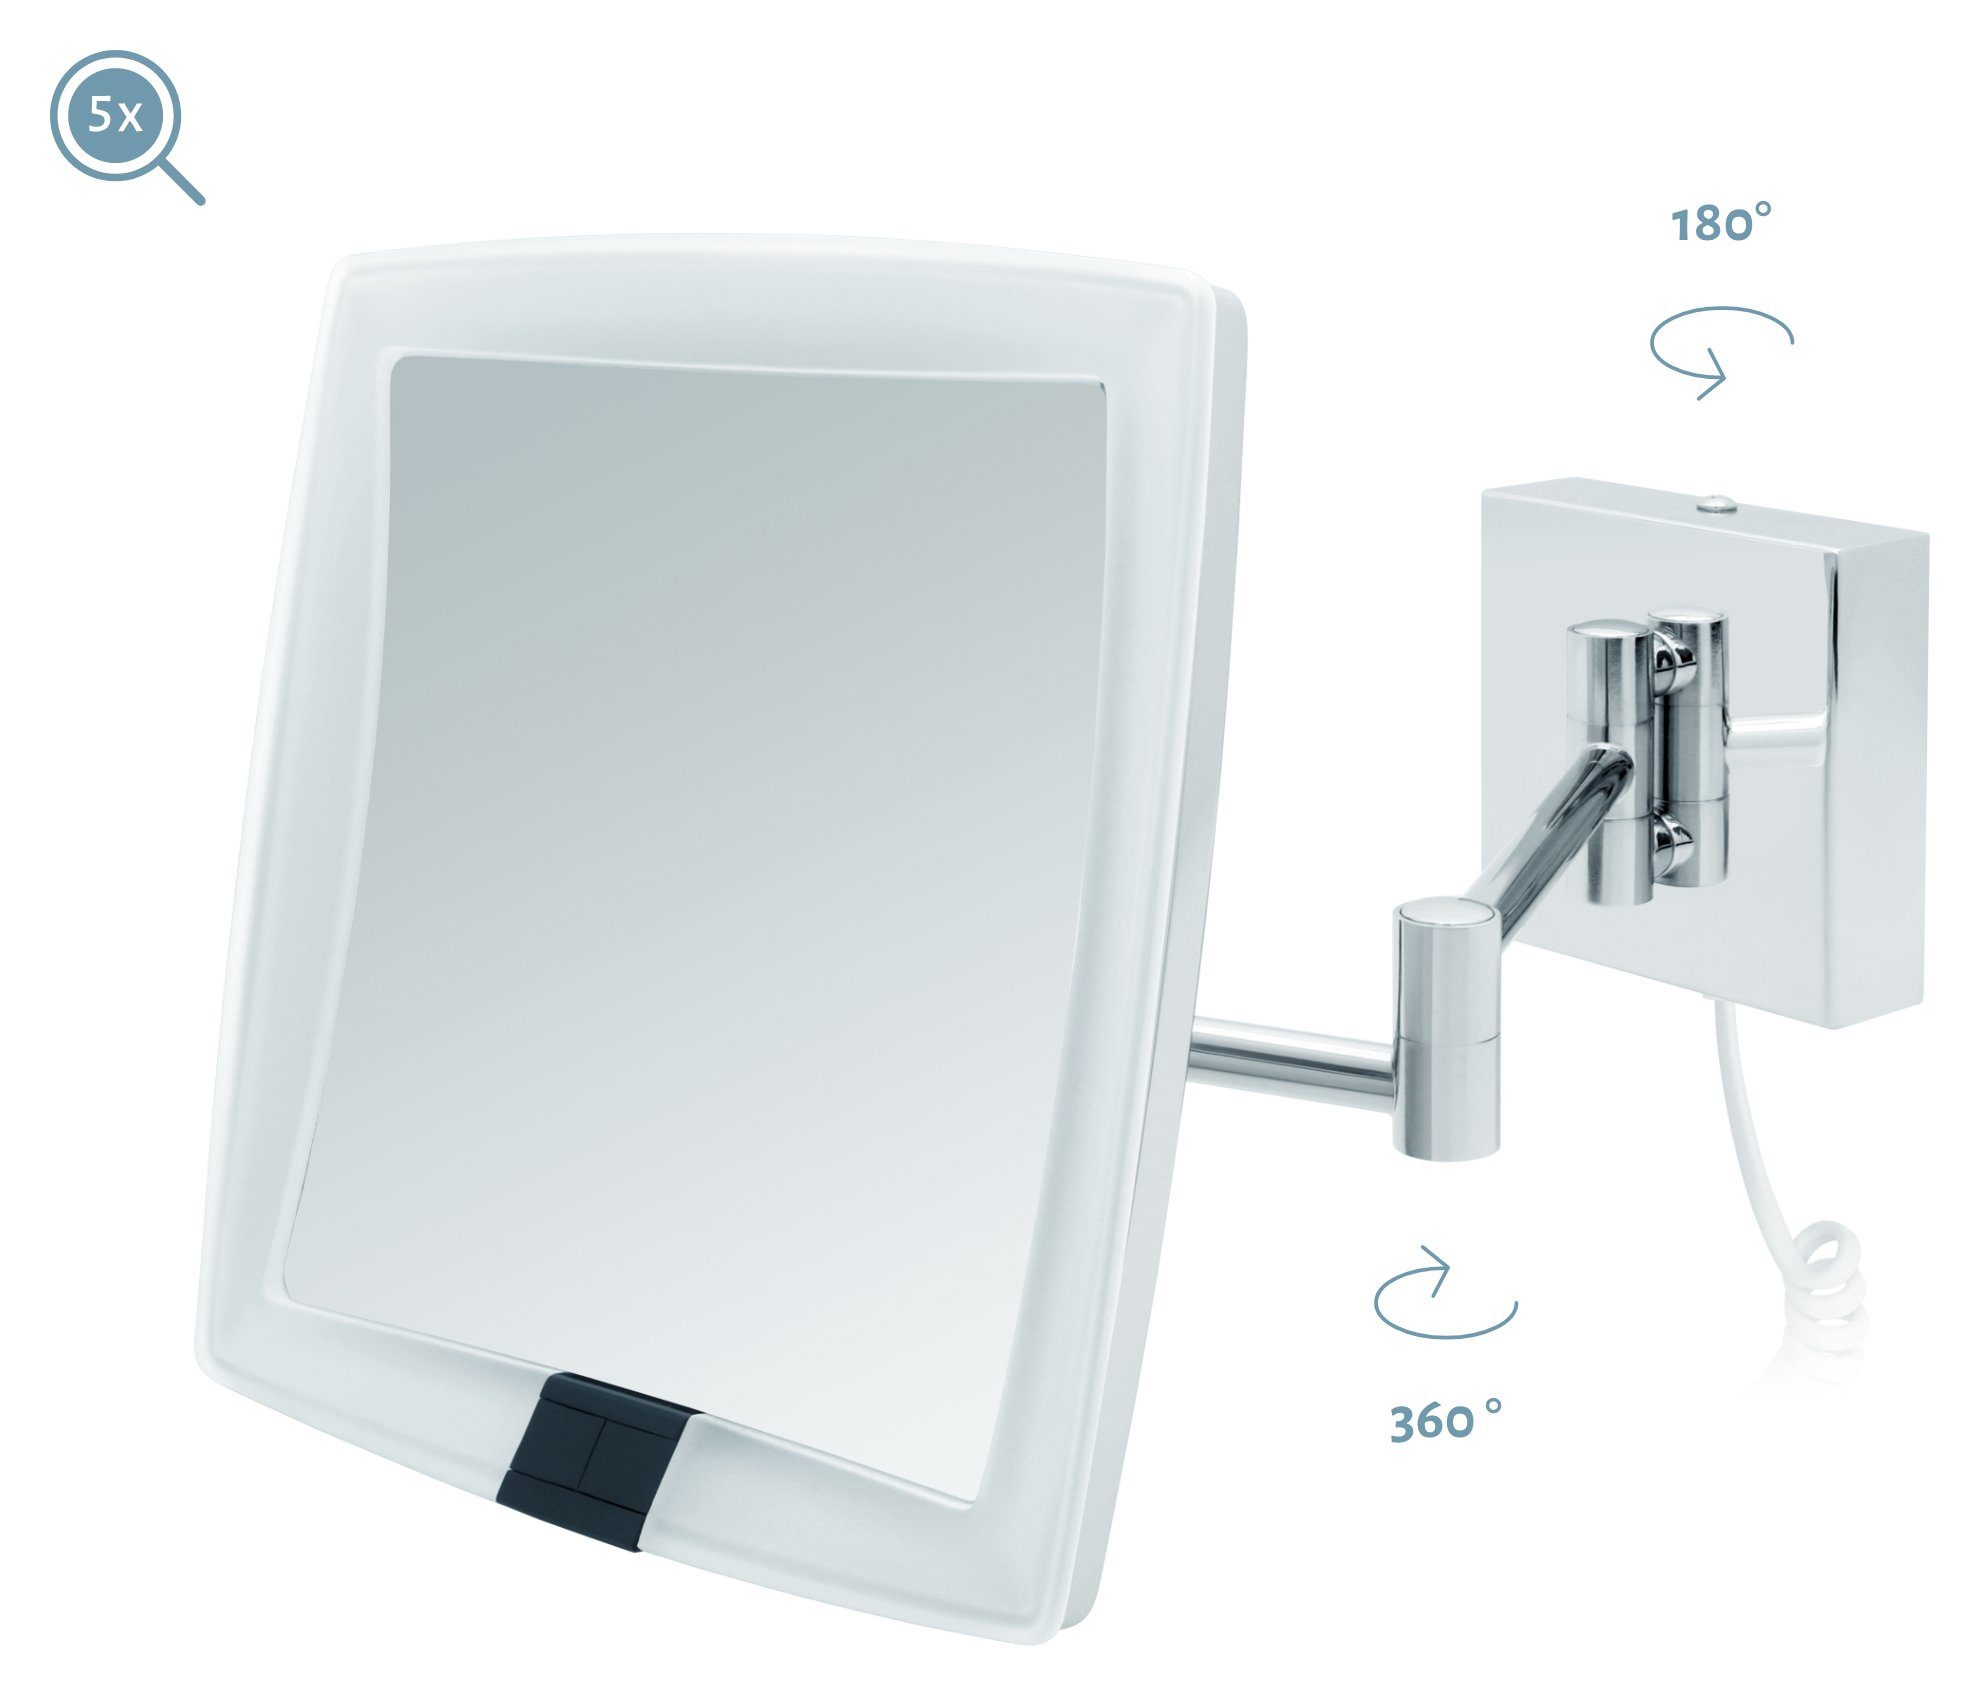 Sensor Vergrößerungsspiegel 5fach Kosmetikspiegel Kosmetikspiegel Verona, LED Kabel weißes Libaro